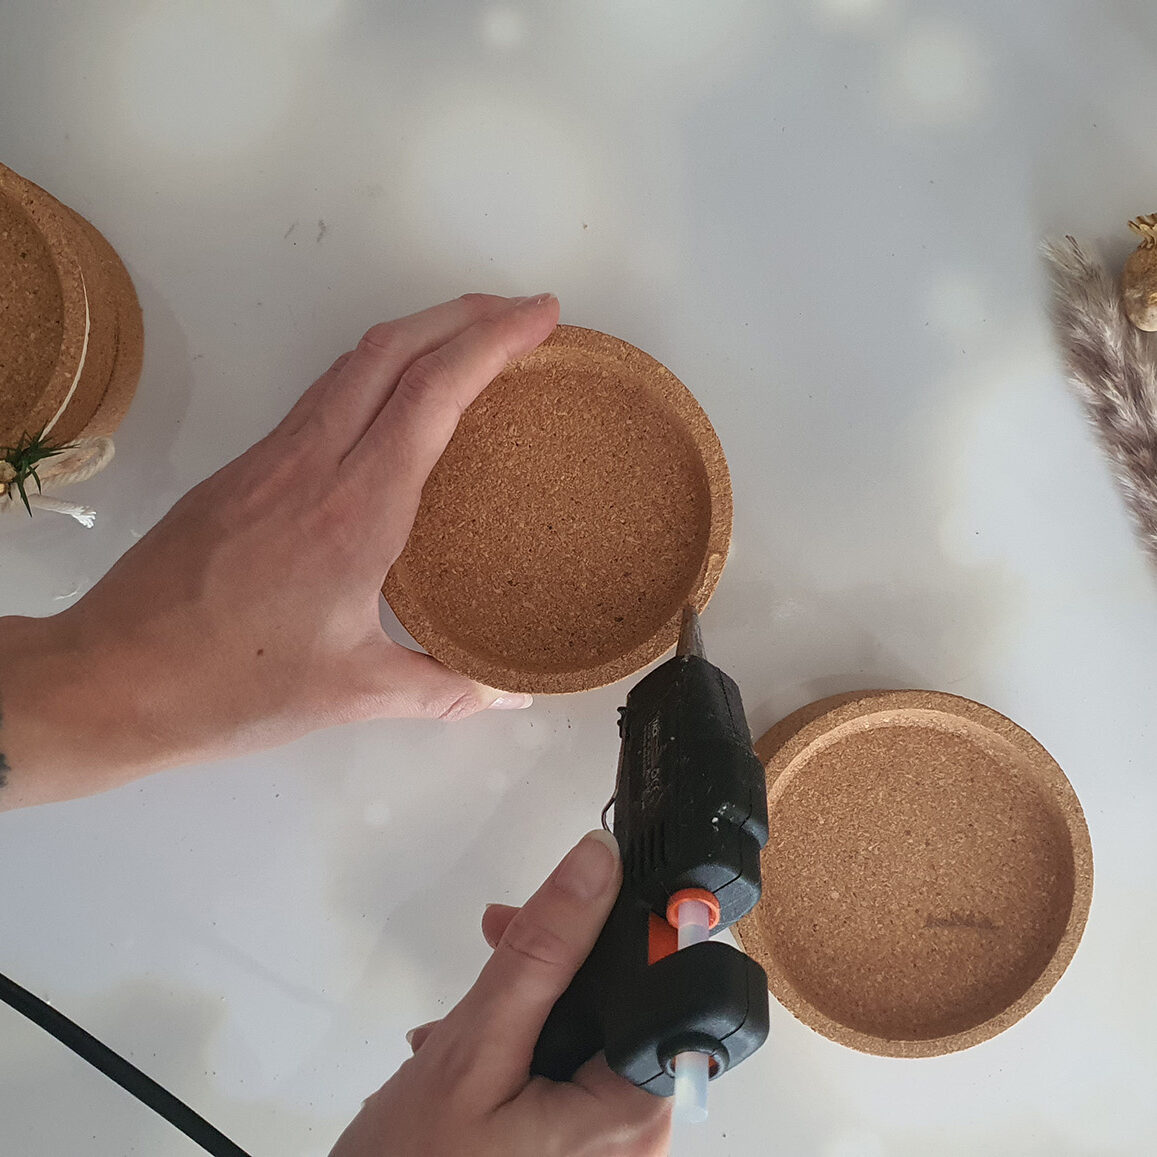 IKEA DIY Adventskranz aus Untersetzern Schritt 1: Kork Untersetzer zu einem Kerzenhalter zusammenkleben